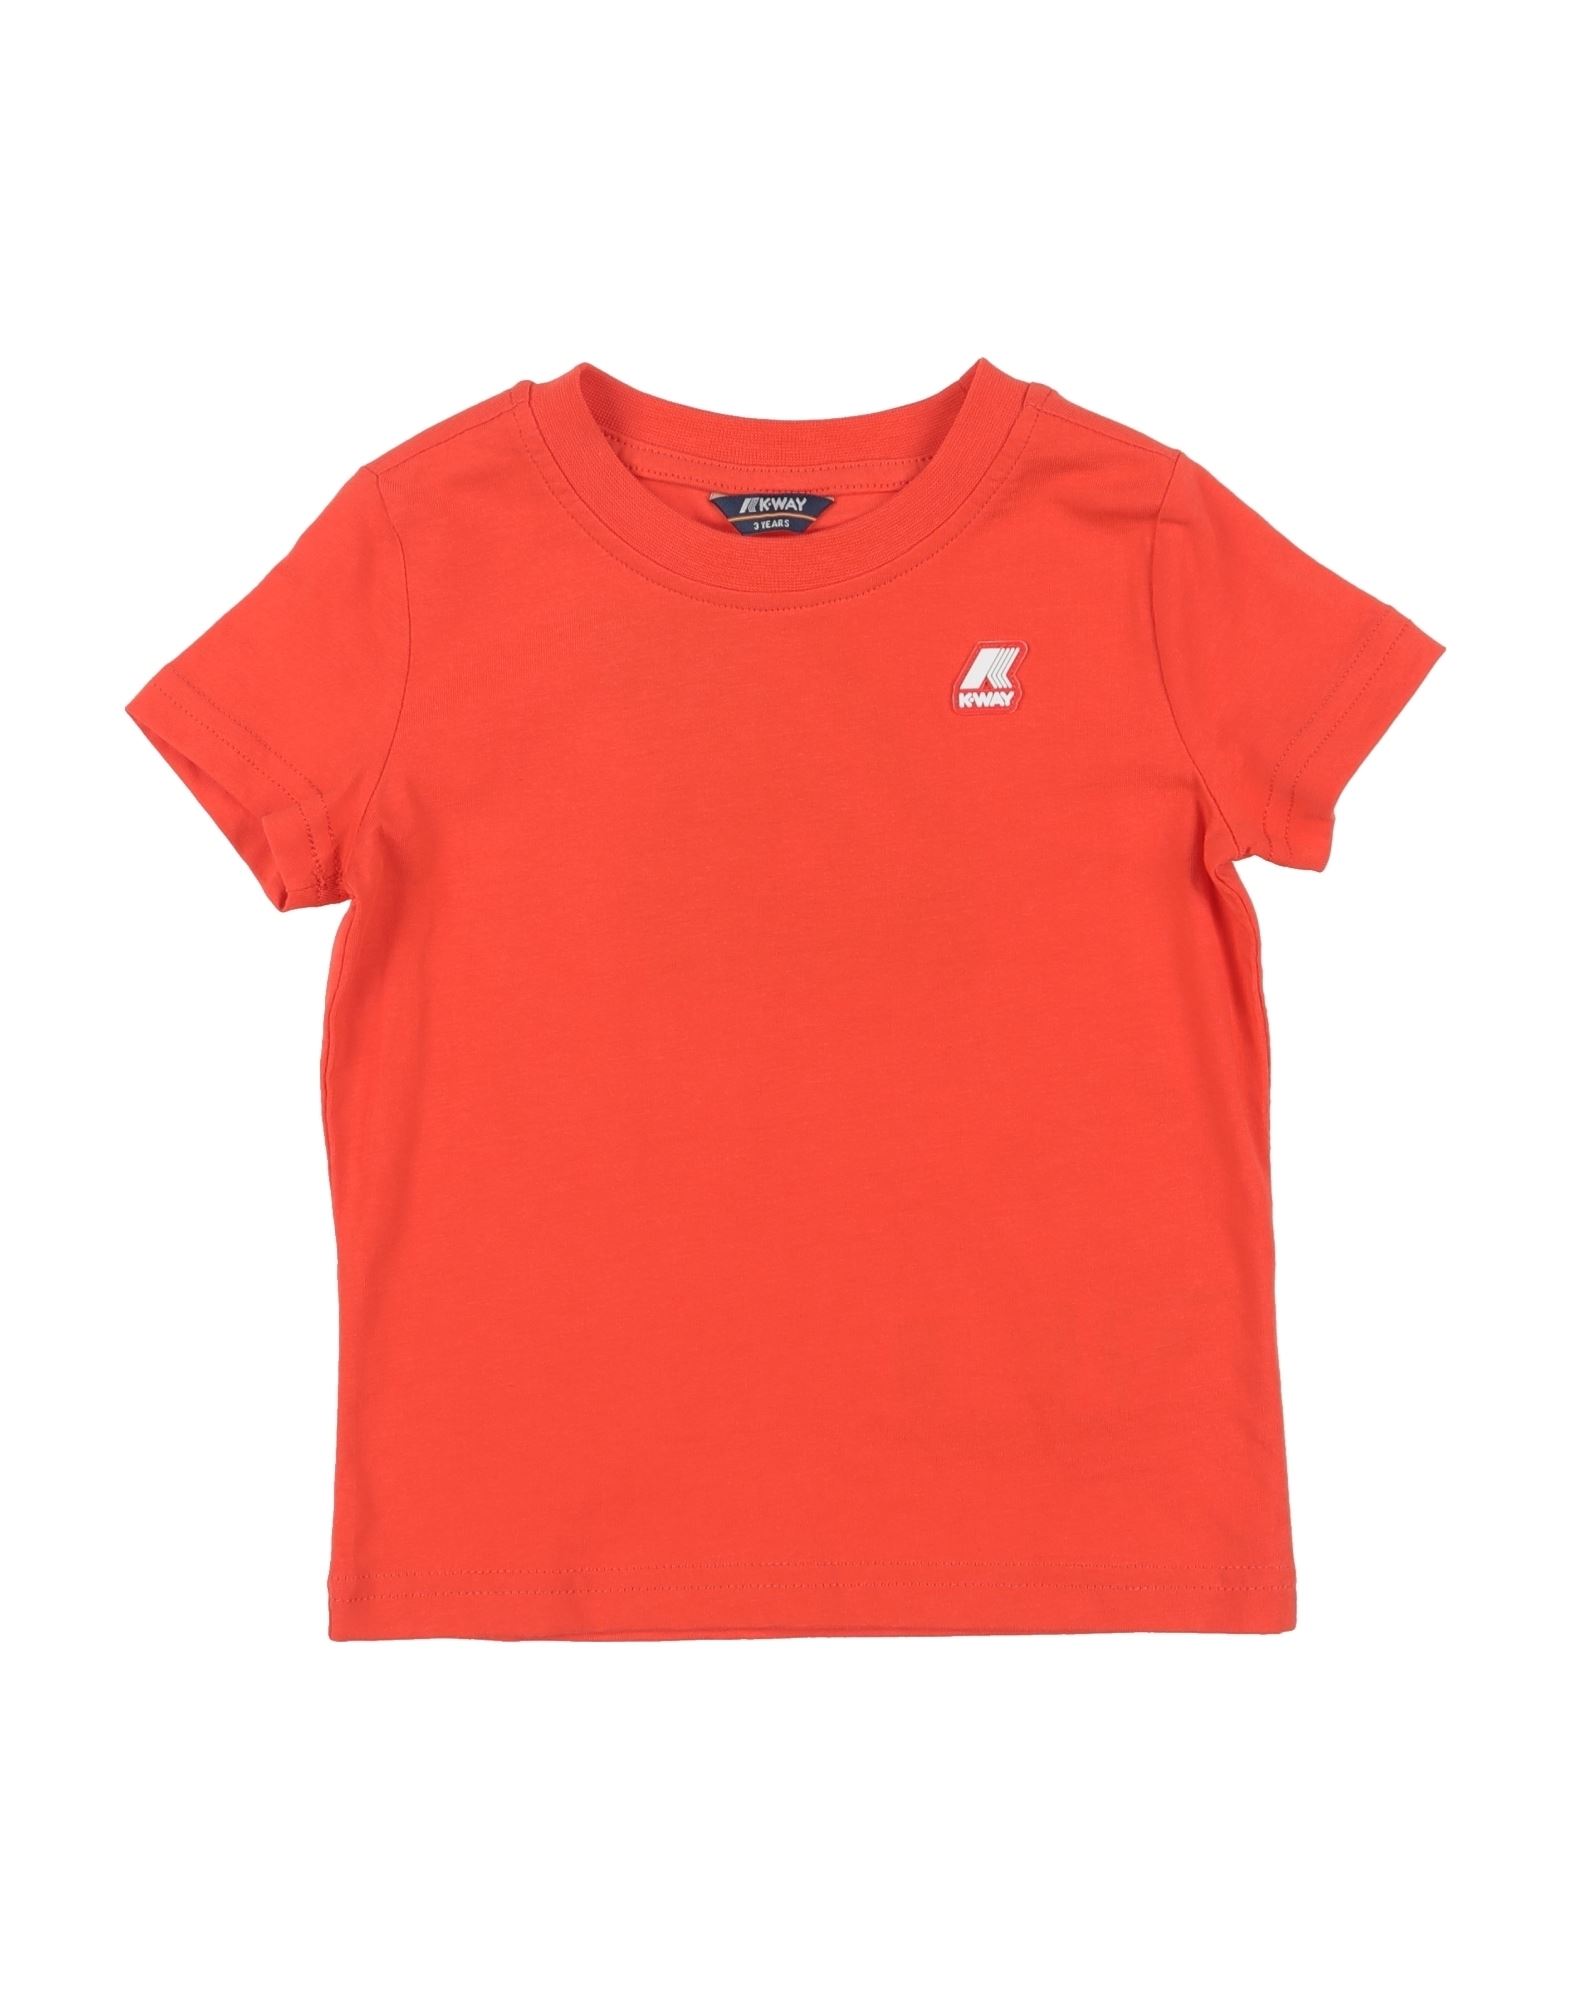 K-way Kids'  T-shirts In Orange